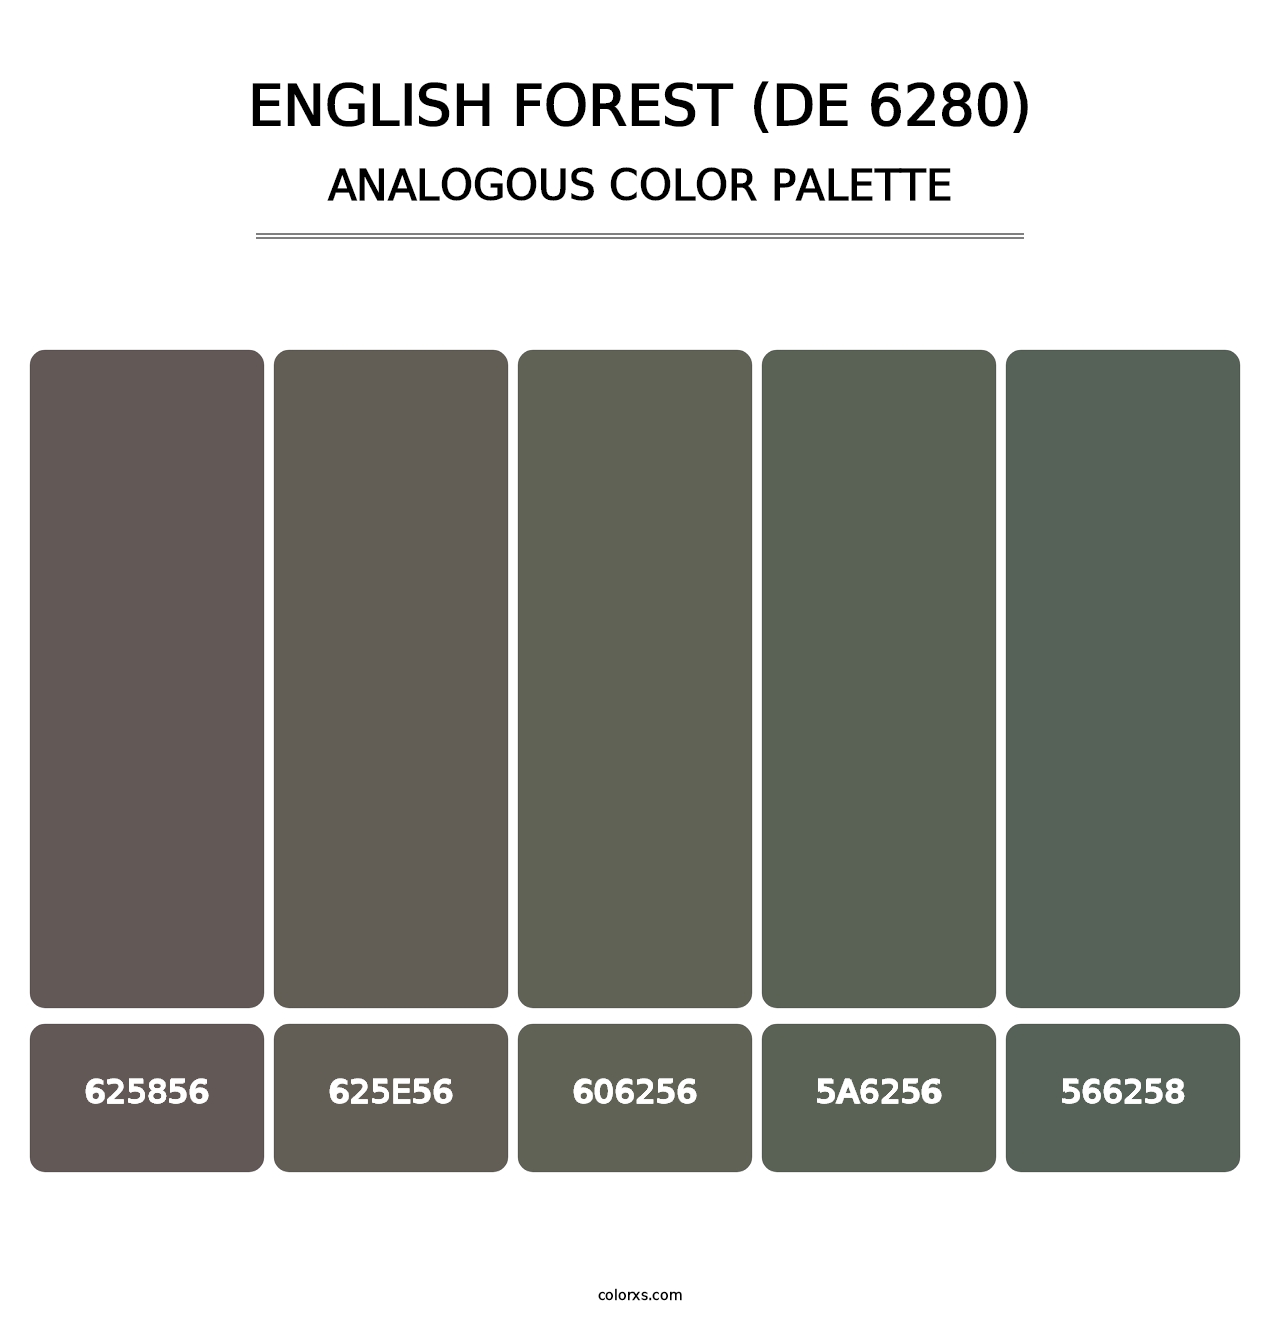 English Forest (DE 6280) - Analogous Color Palette